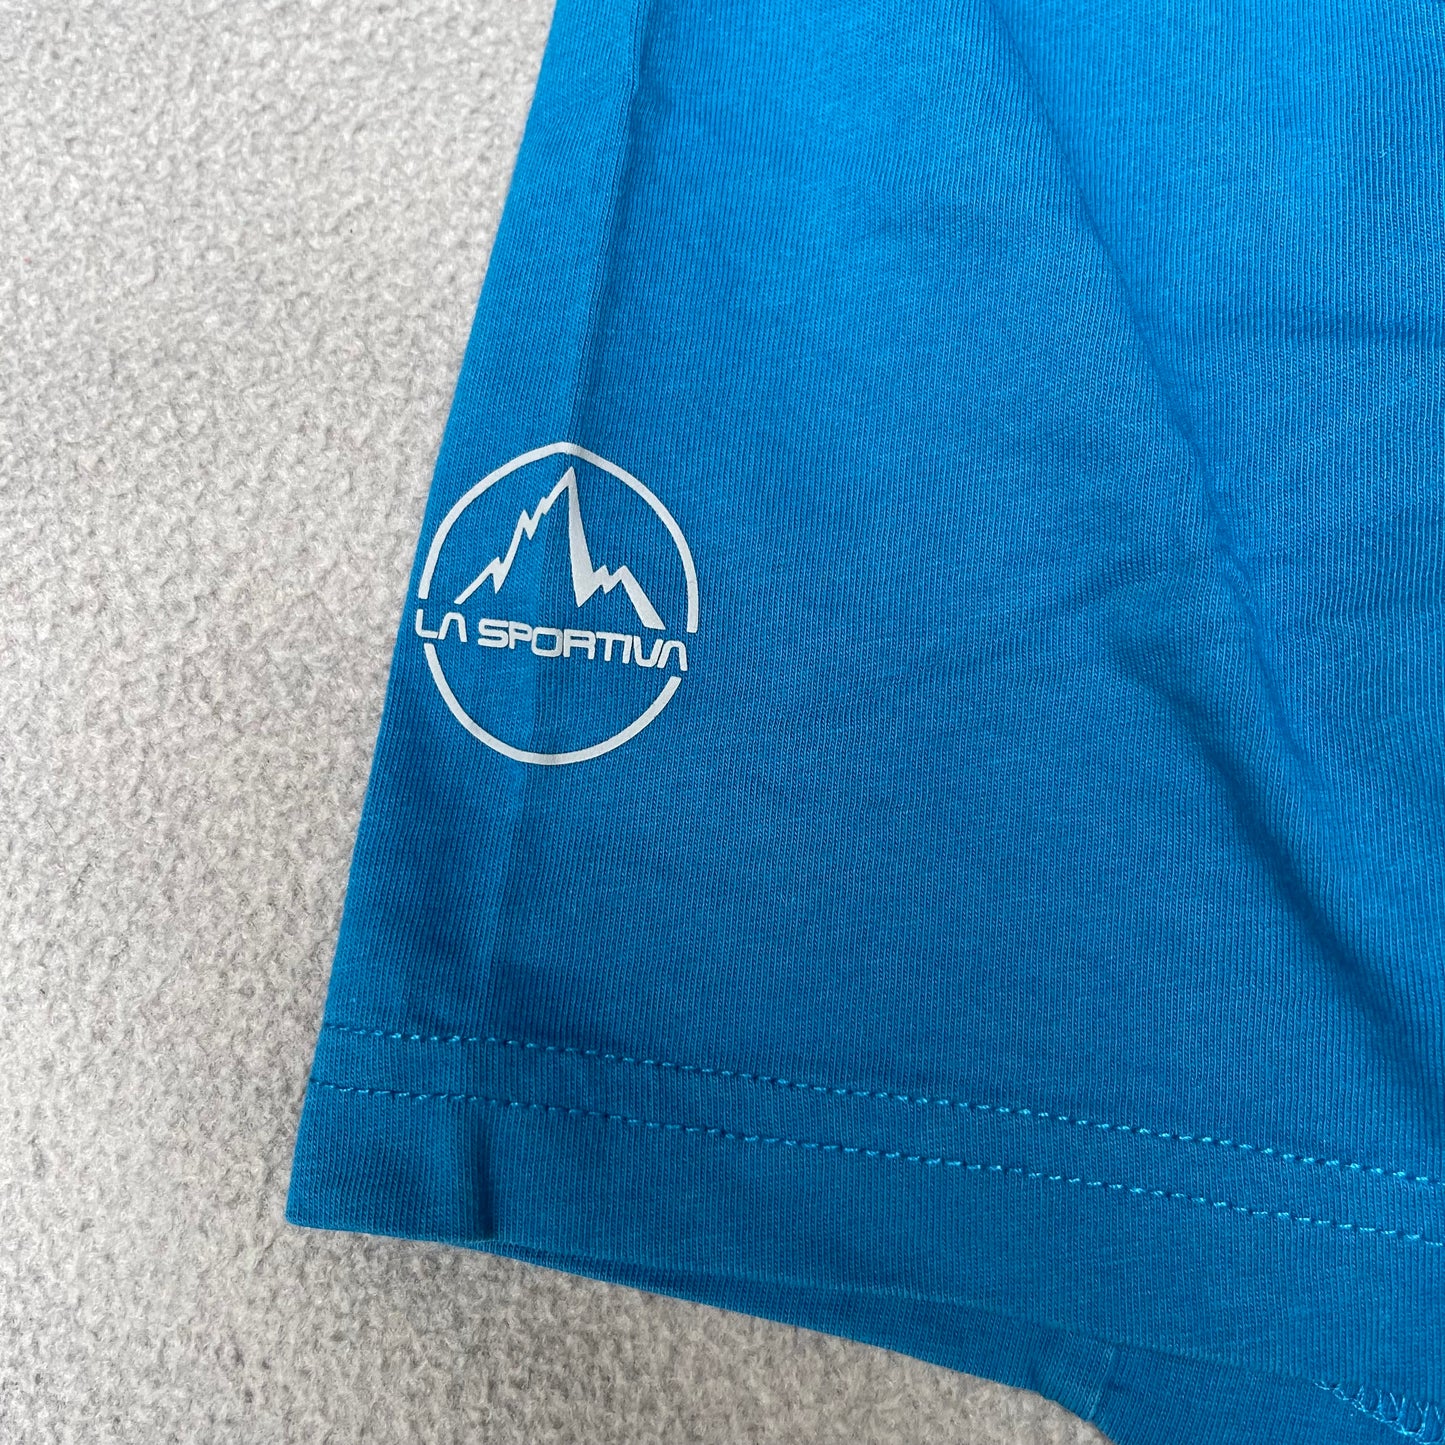 T-Shirt von La Sportiva S Herren 100% Baumwolle blau mit Print